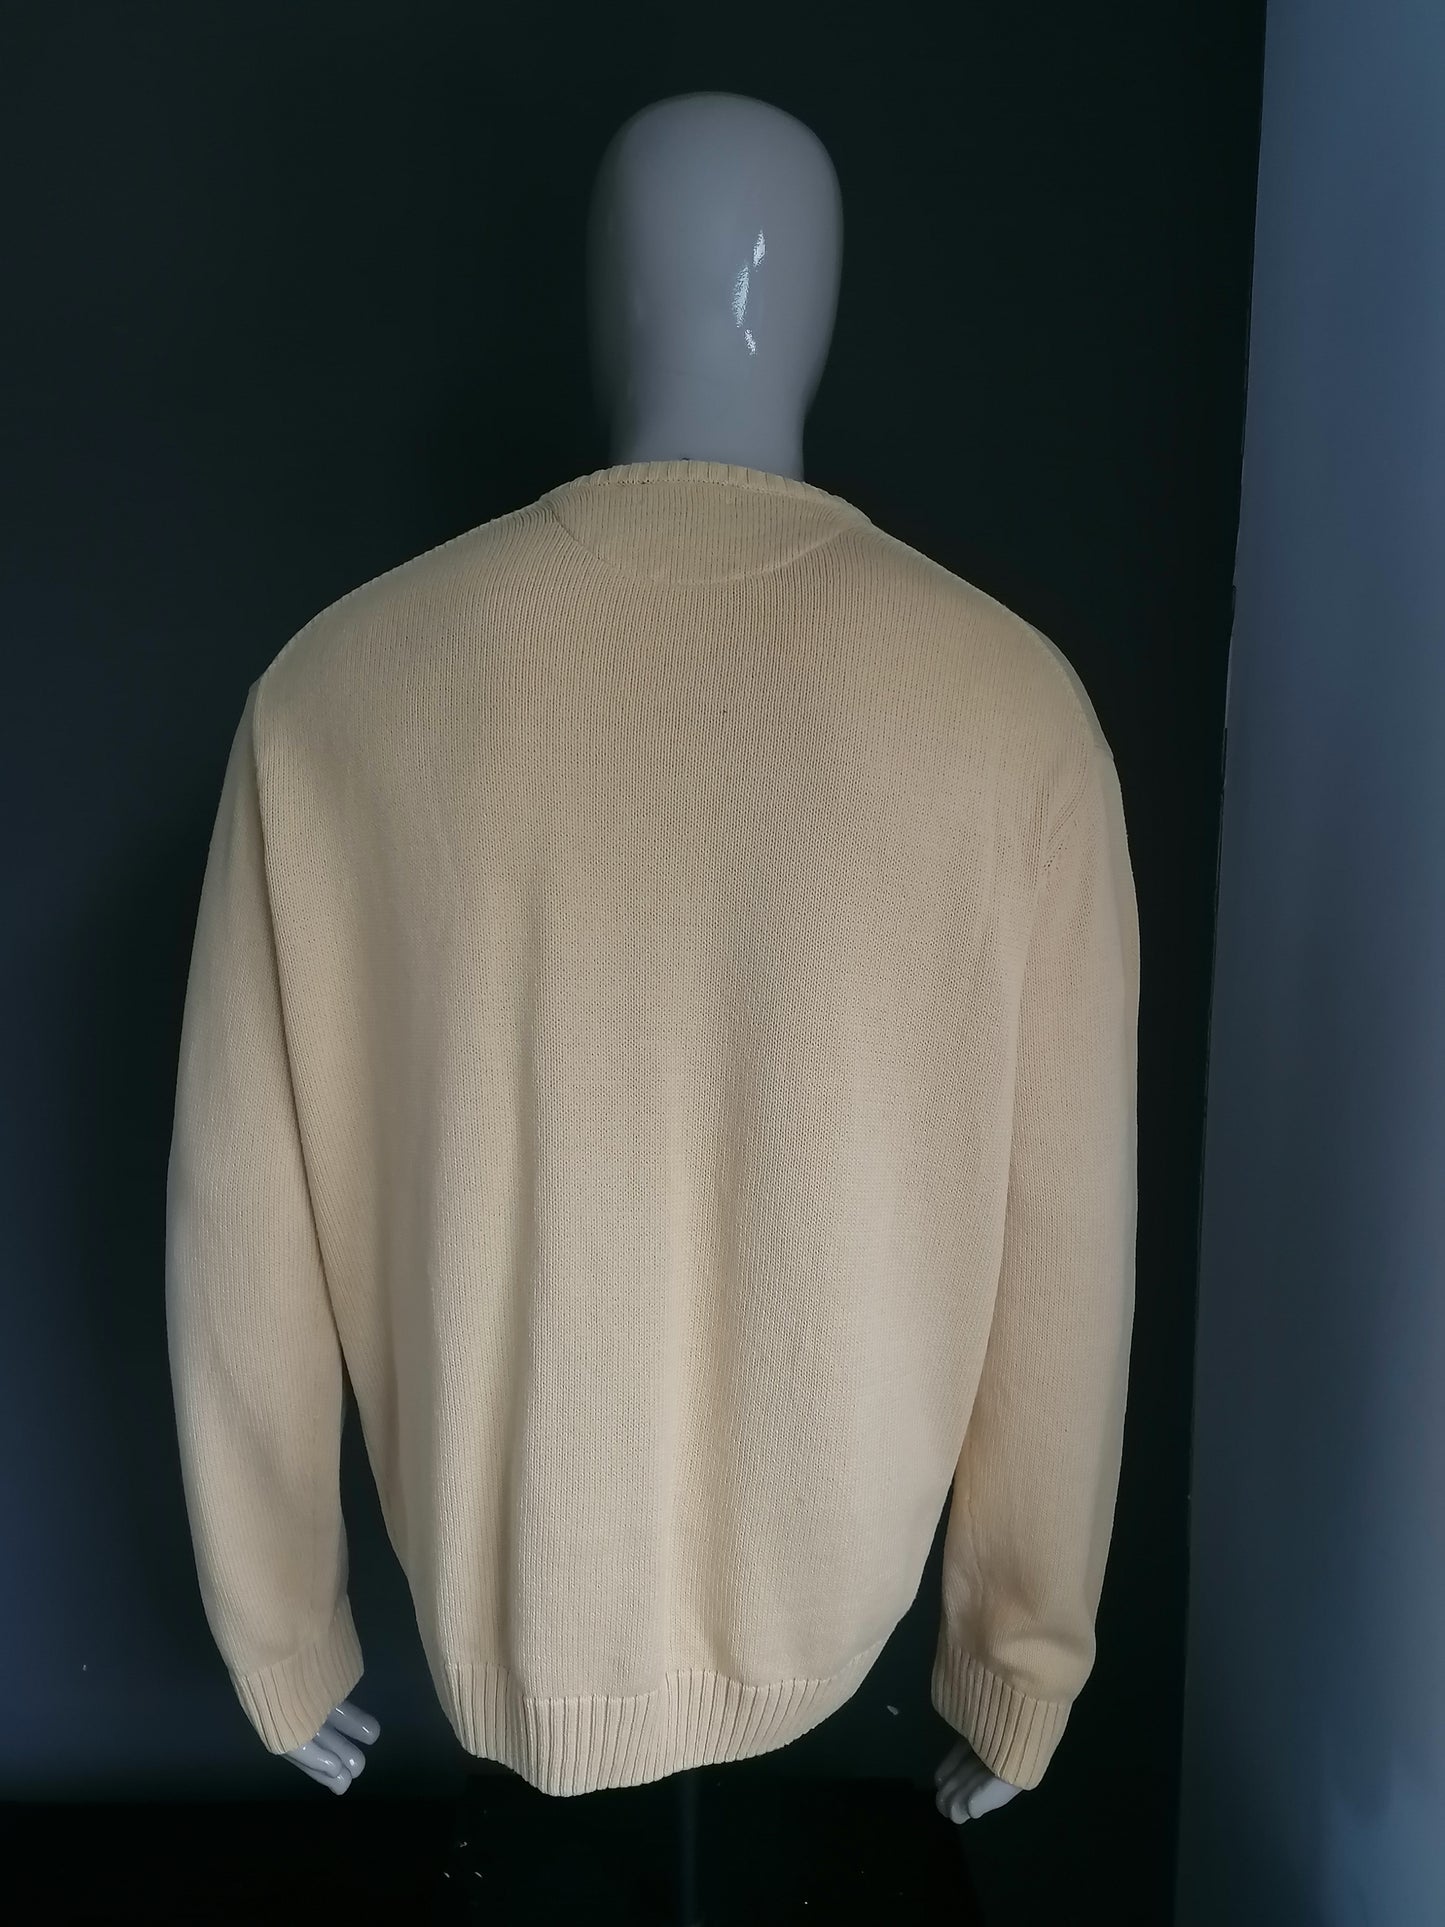 Maglione di cotone di ny coton con scollo a V. Colore giallo. Dimensione XXL / 2XL.